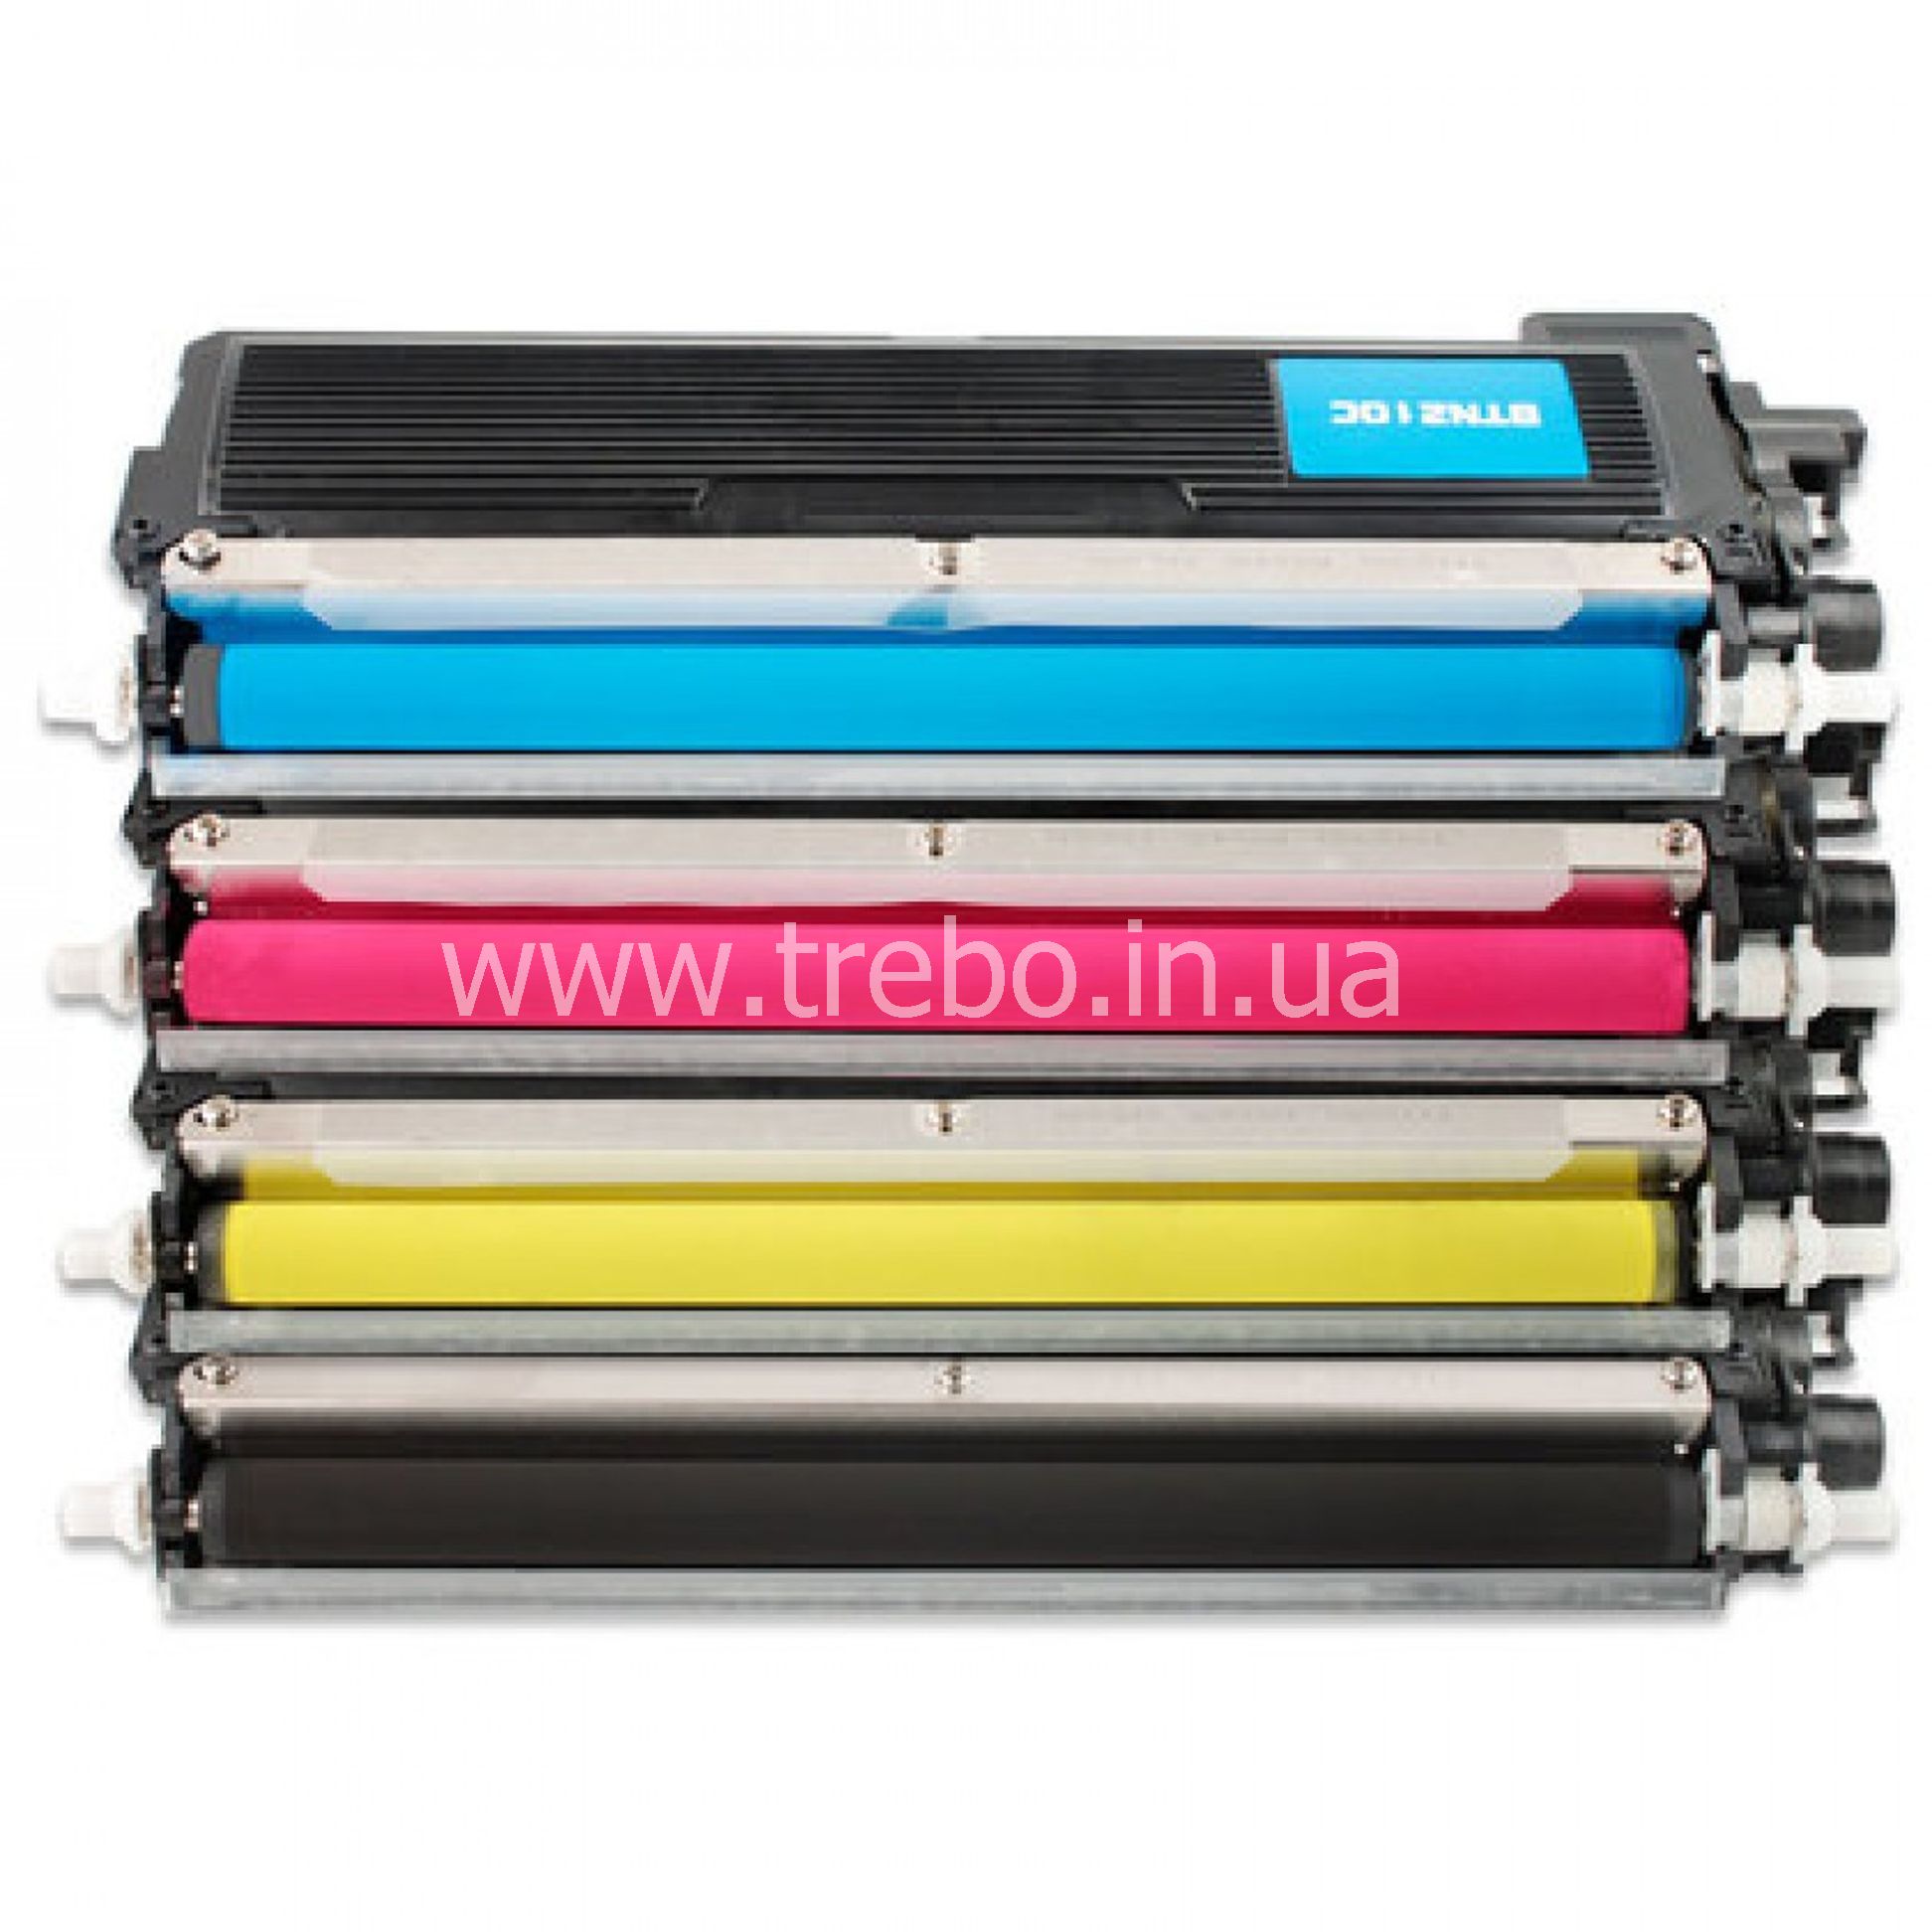 Купить картридж для принтера 650. TN-210bk. Тонер цветной для картриджа 740а. W1510x картридж.